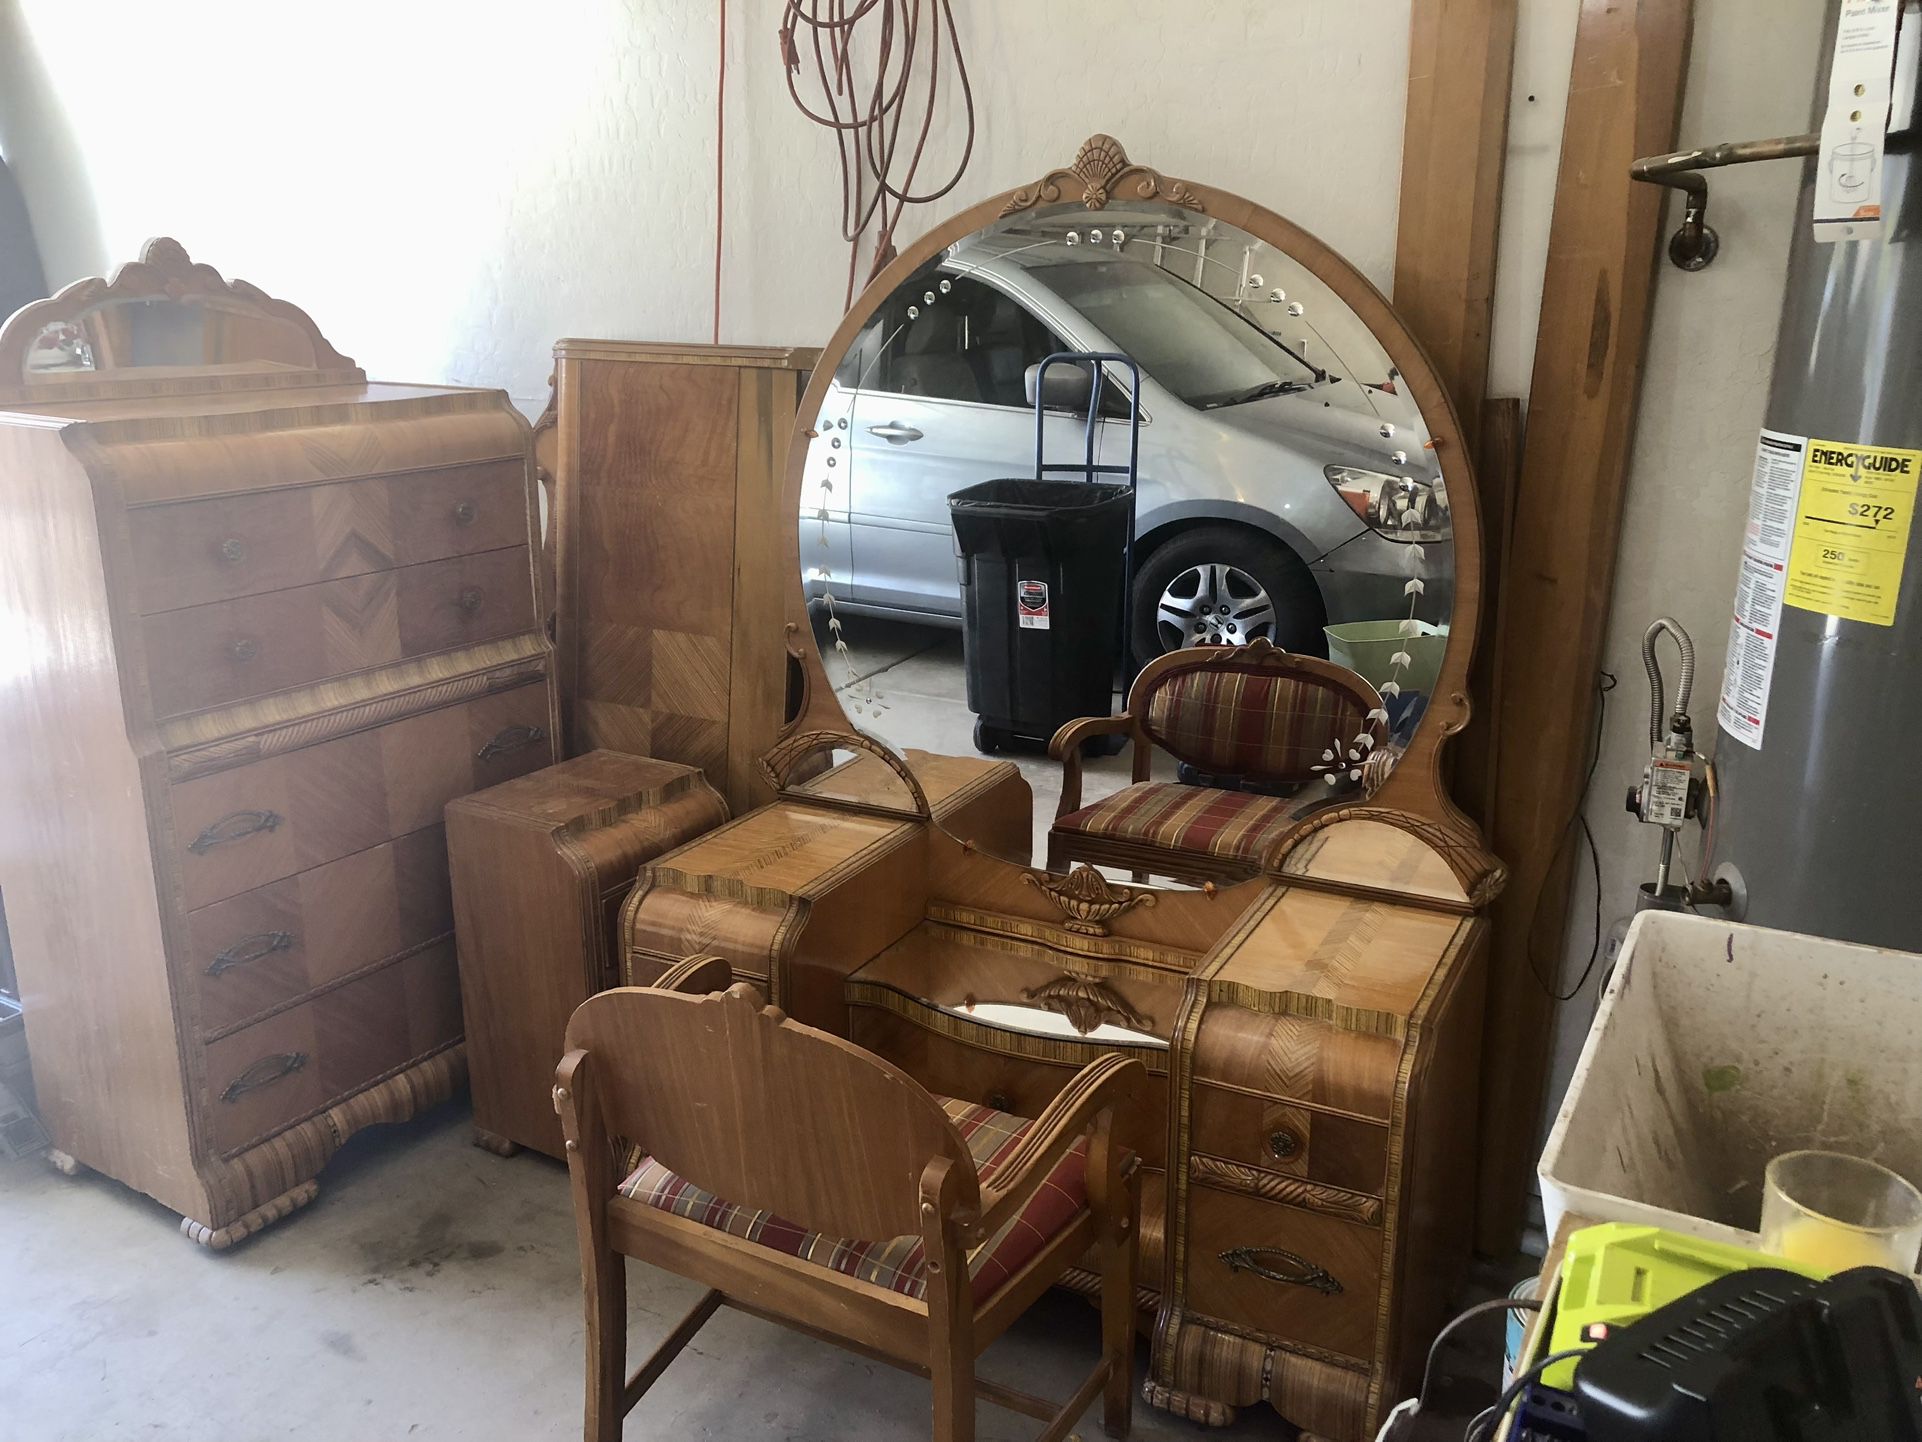 Antique Furniture Set 